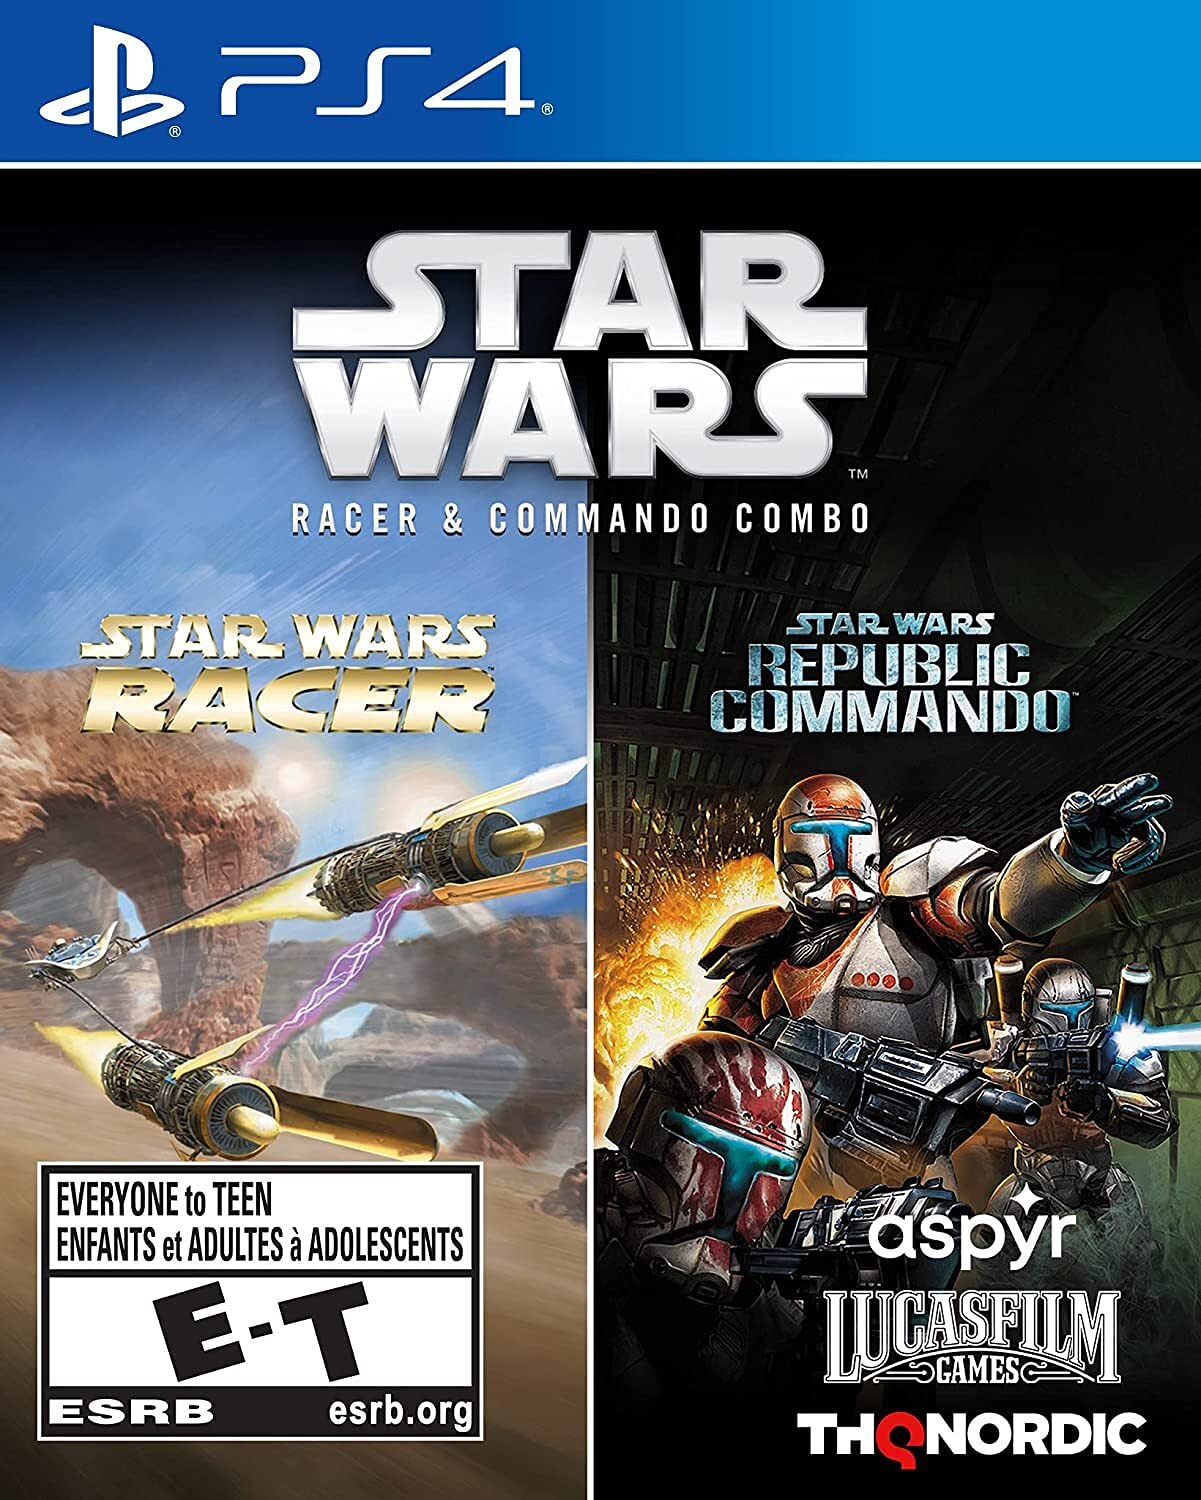 STAR WARS RACER & COMANDO COMBO PS4 - EasyVideoGame